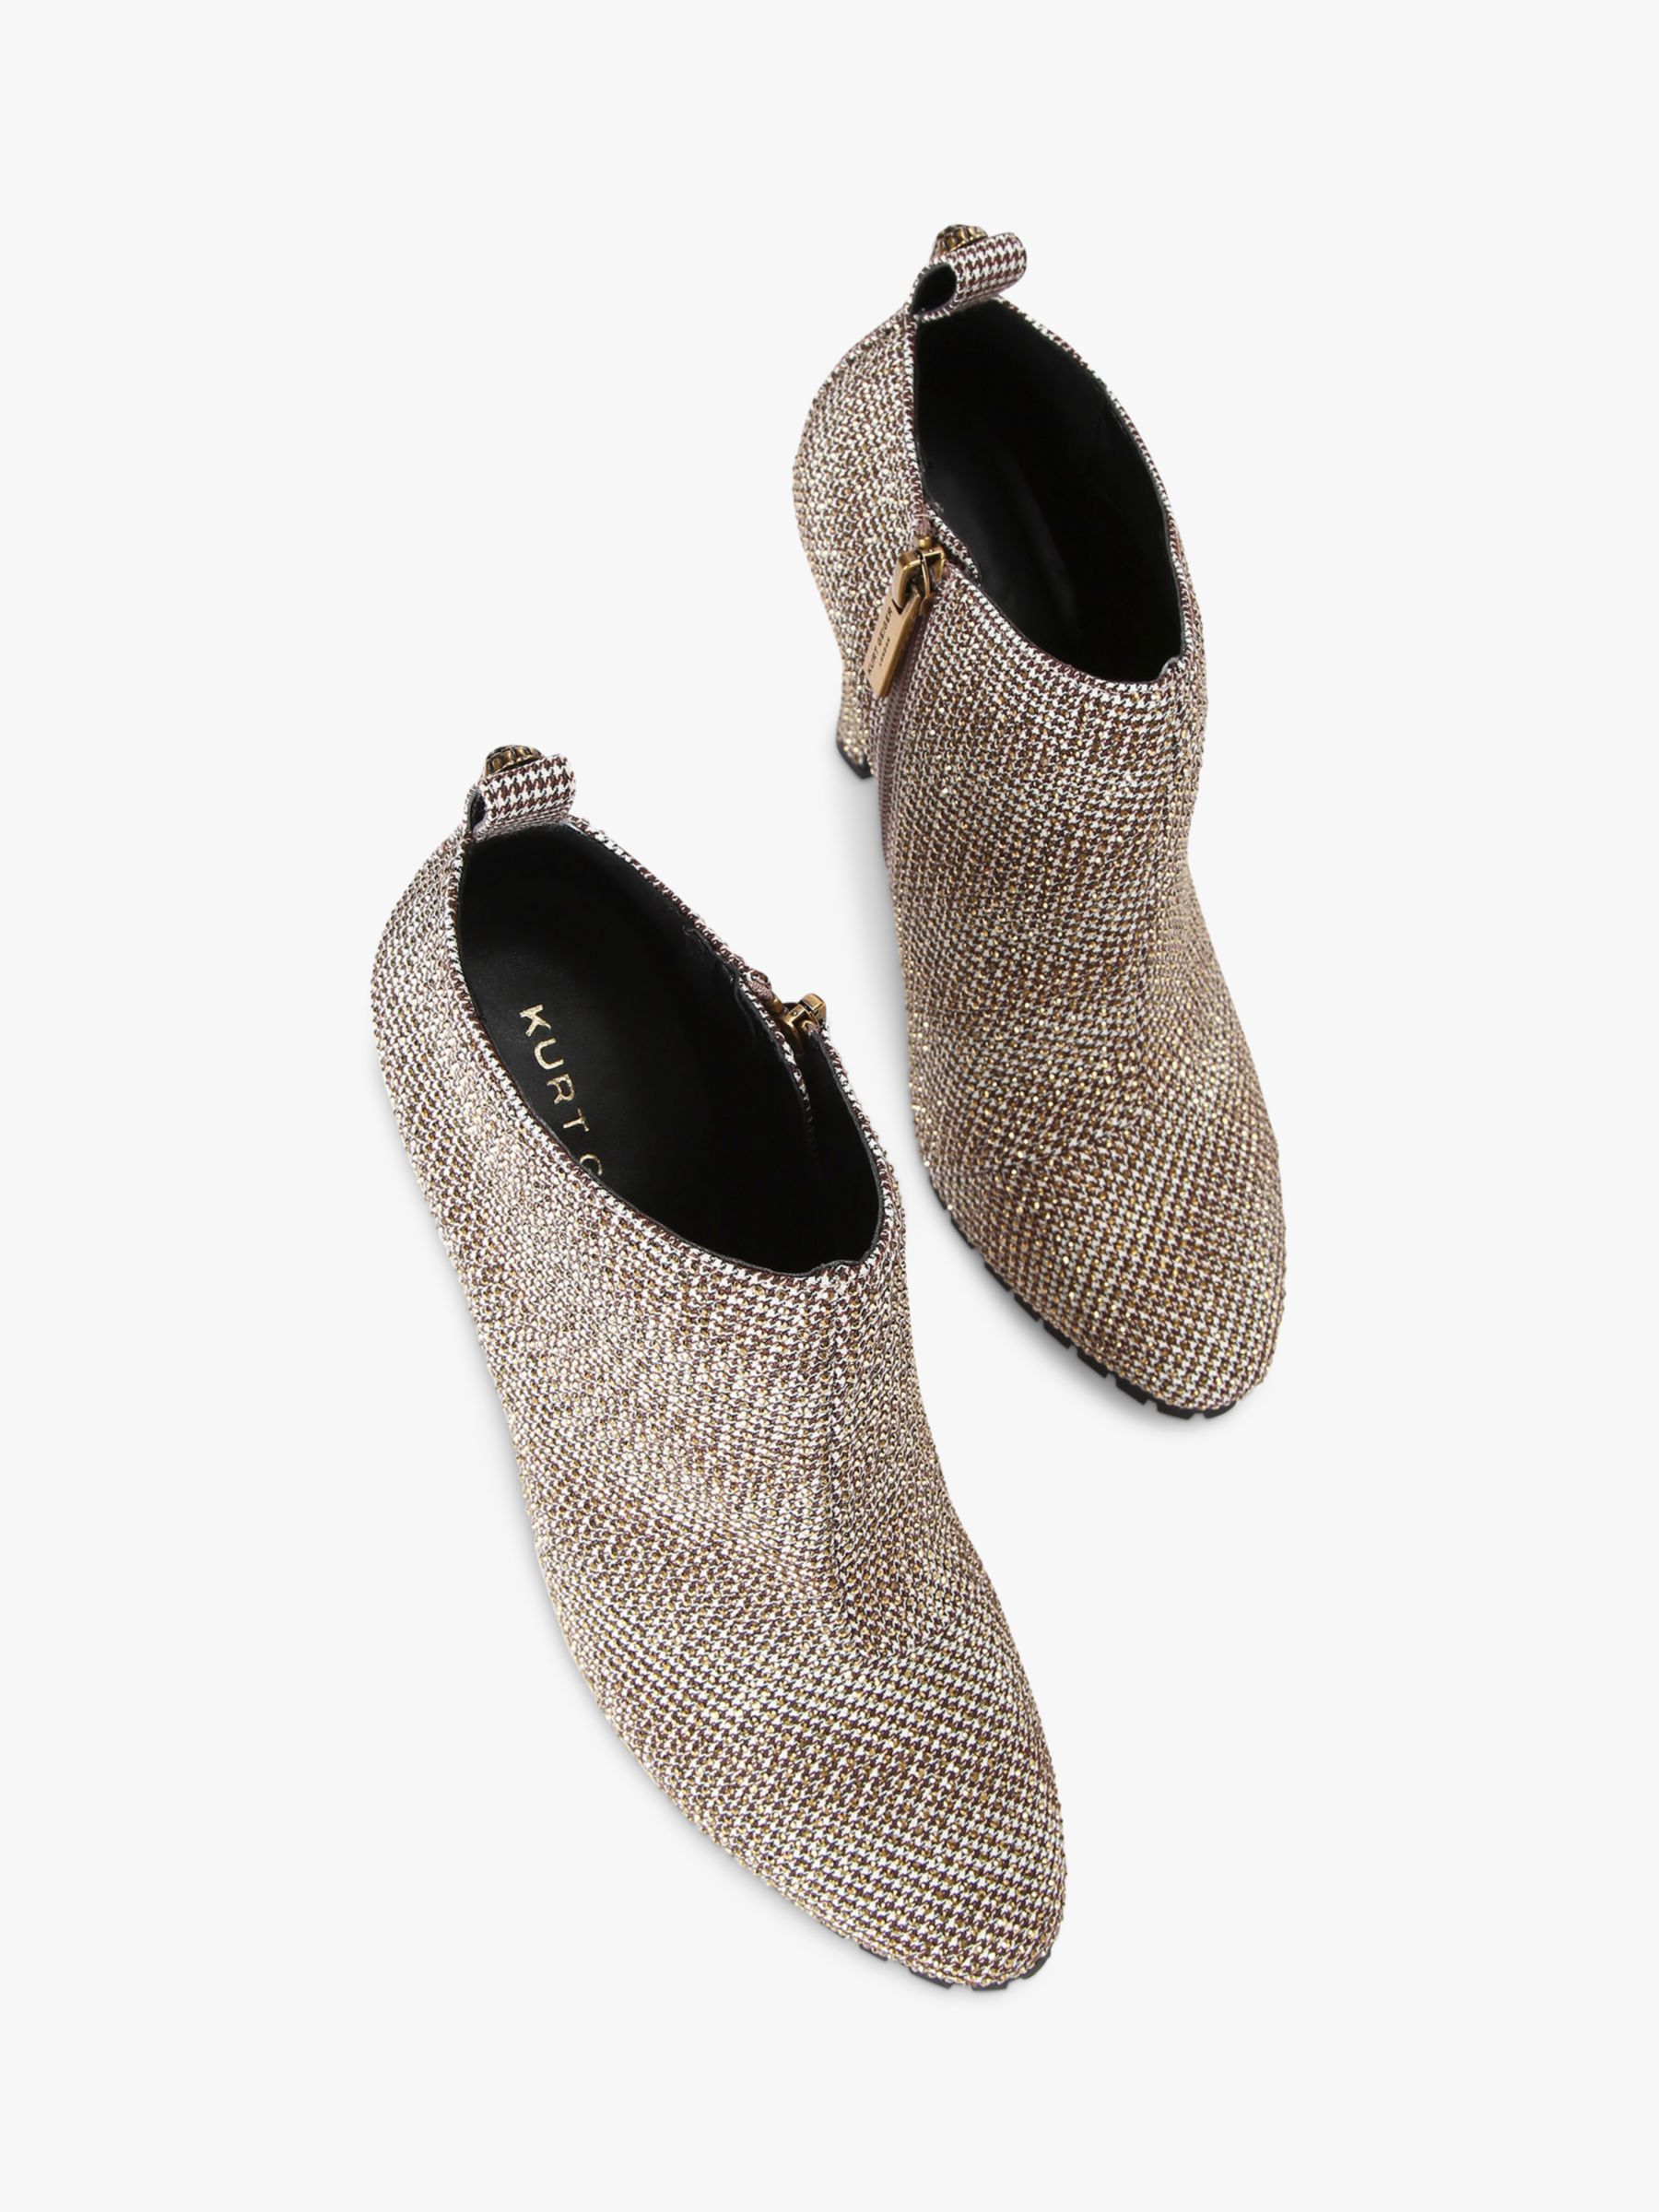 Kurt Geiger London Shoreditch Fabric Shoe Boots, Natural Beige, 4